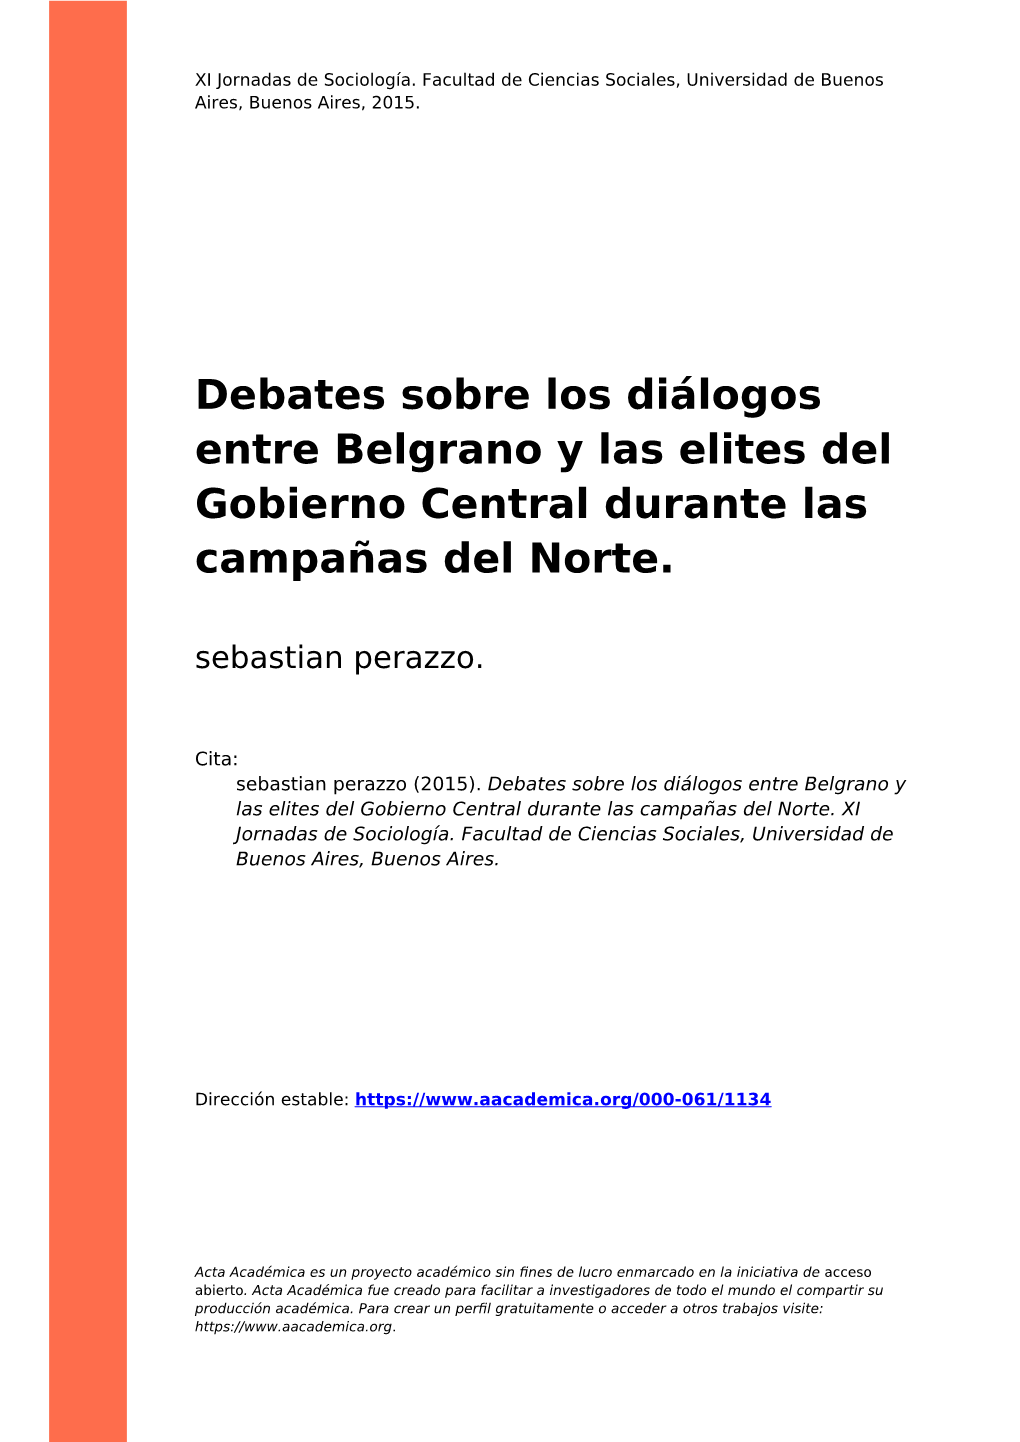 Debates Sobre Los Diálogos Entre Belgrano Y Las Elites Del Gobierno Central Durante Las Campañas Del Norte